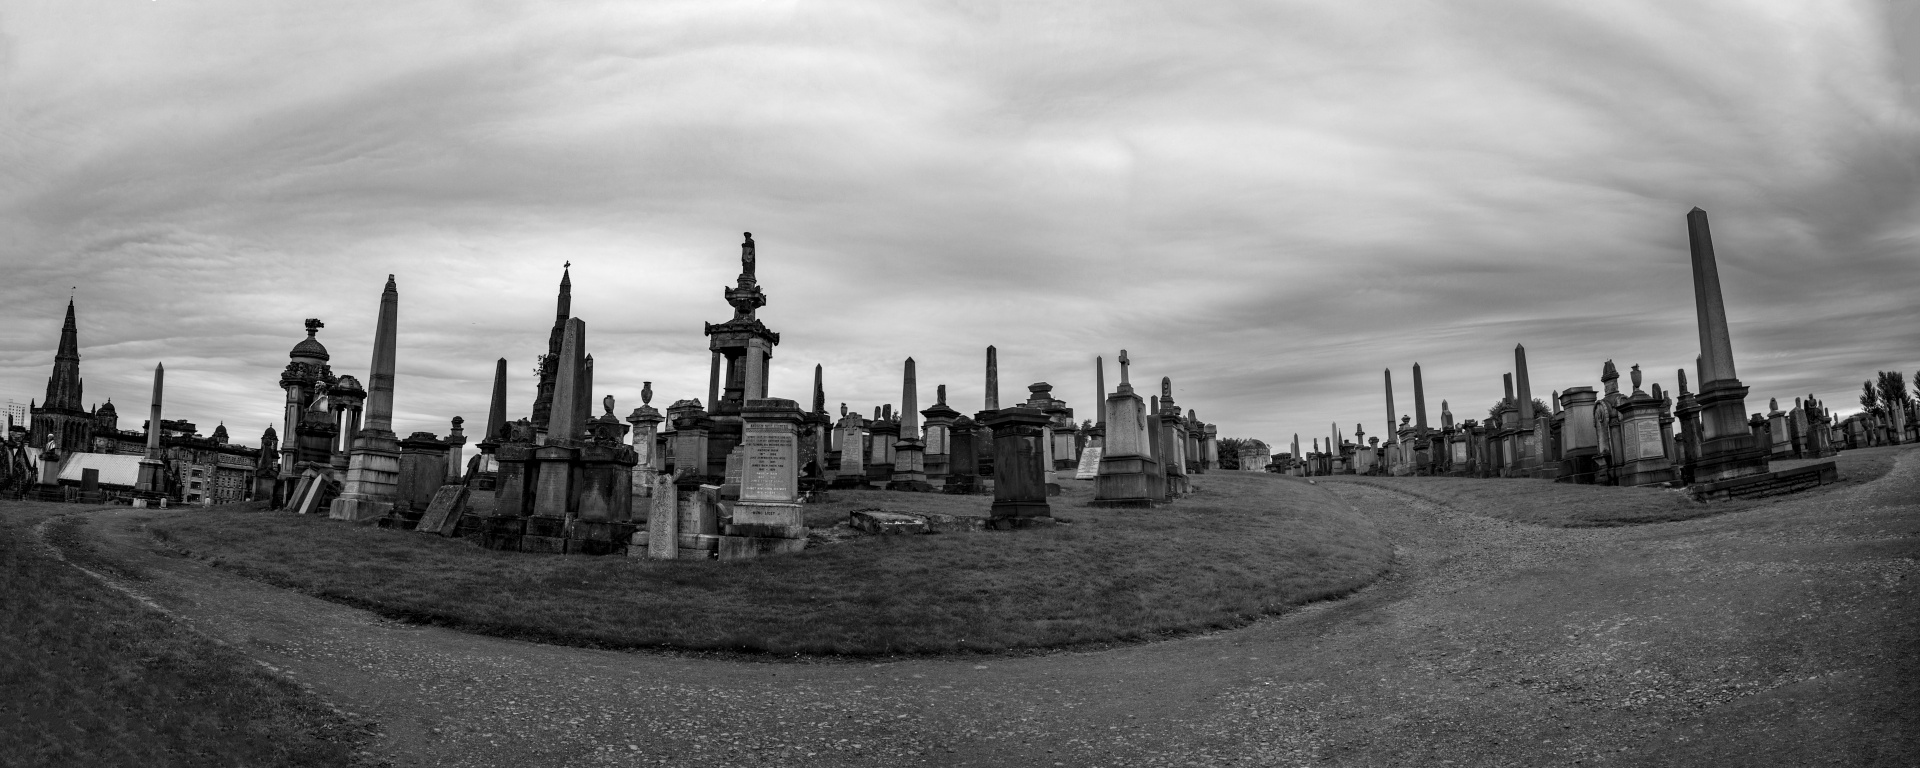 britain cemetery church free photo